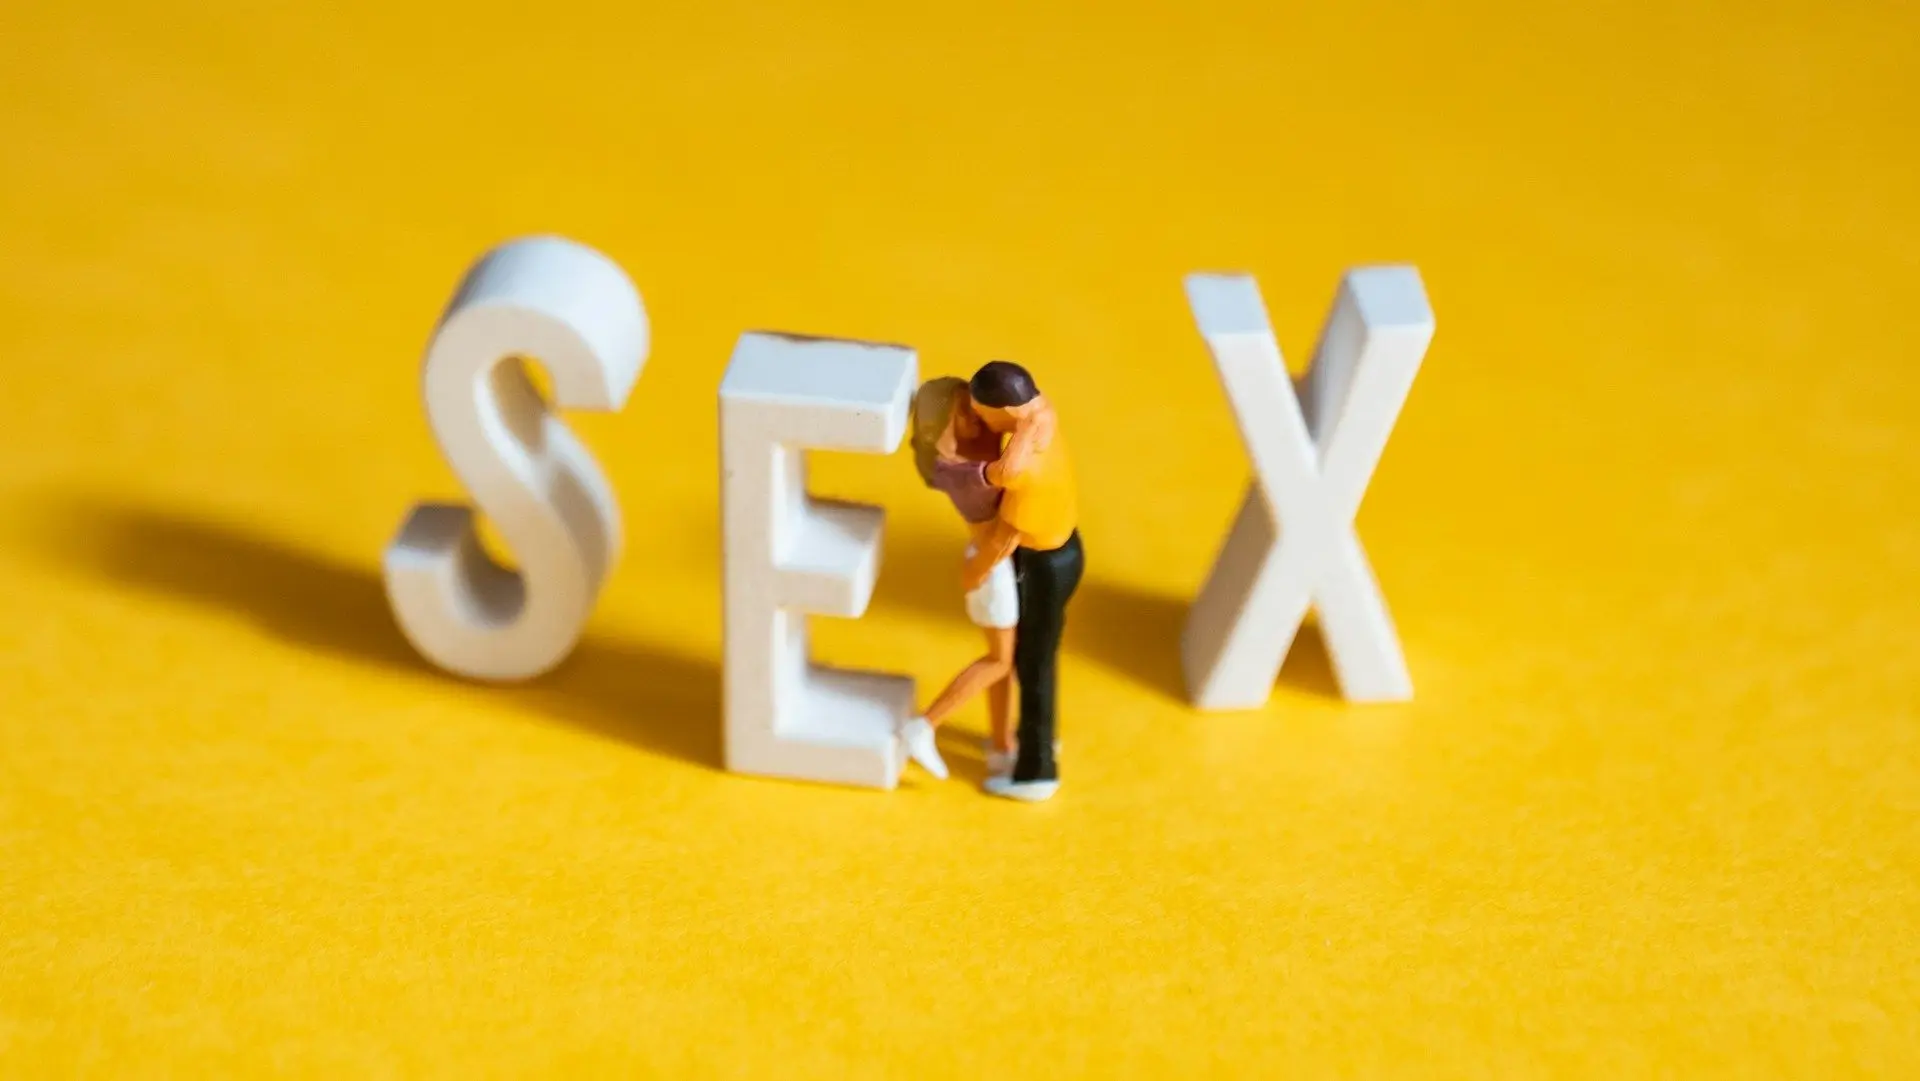 Сексолог - це фахівець, який вивчає сексуальність людини та може допомогти вирішити різноманітні проблеми у цій сфері. У процесі консультації він допомагає розкрити та зрозуміти власні сексуальні прагнення, вирішити конфлікти та проблеми відносин, допомаг